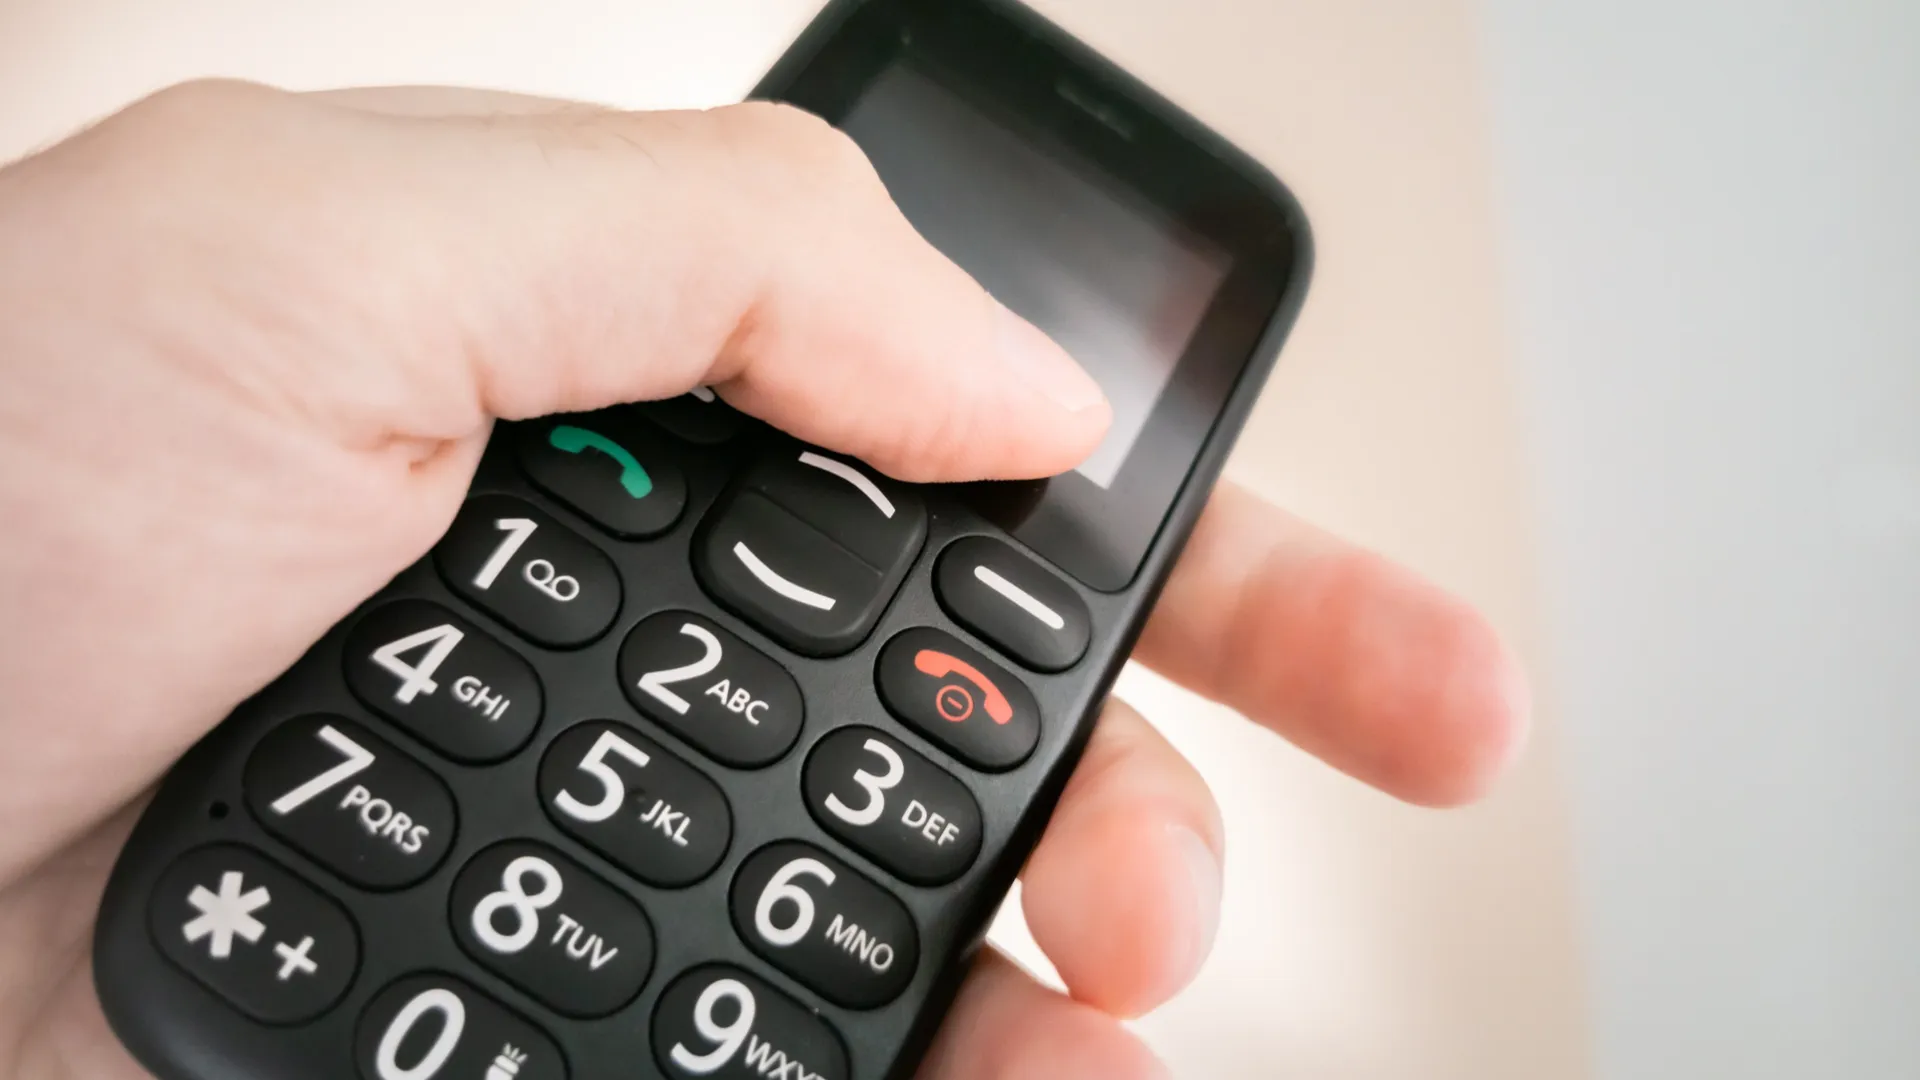 Телефоны подарят на День призывника. Фото: KILO LUX / Shutterstock / Fotodom